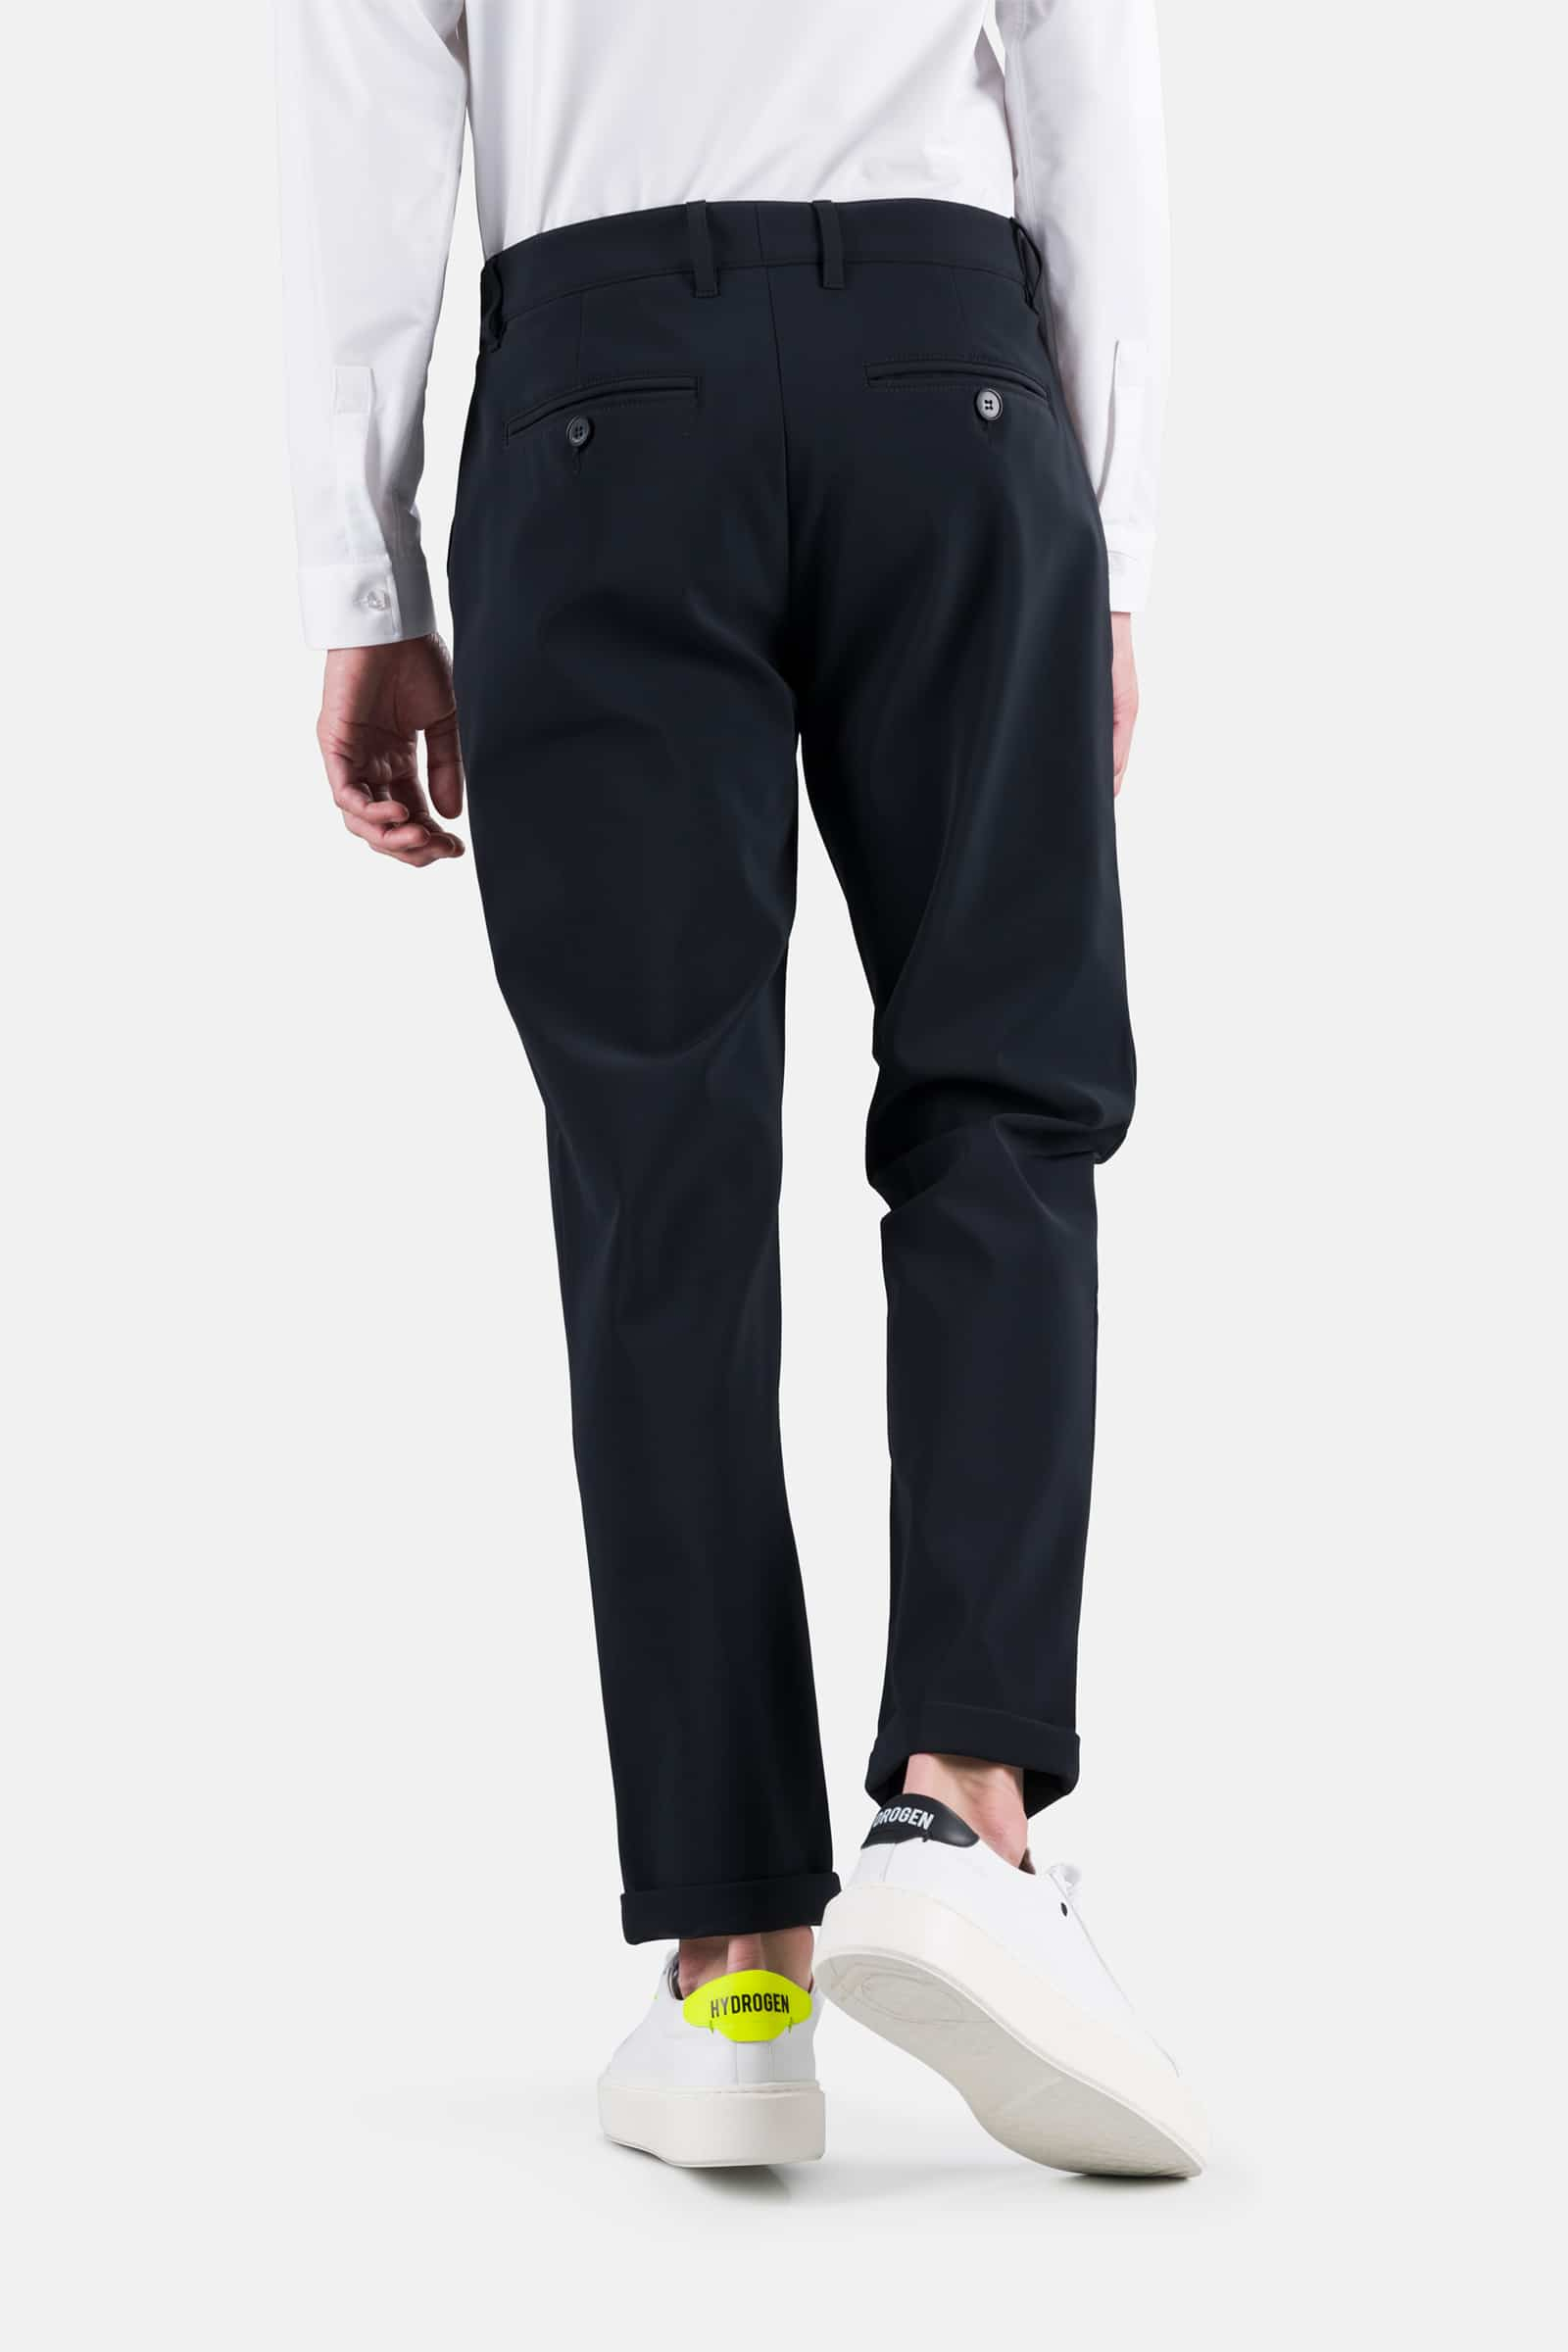 CLASSIC PANTS - BLACK CHECK - Hydrogen - Luxury Sportwear